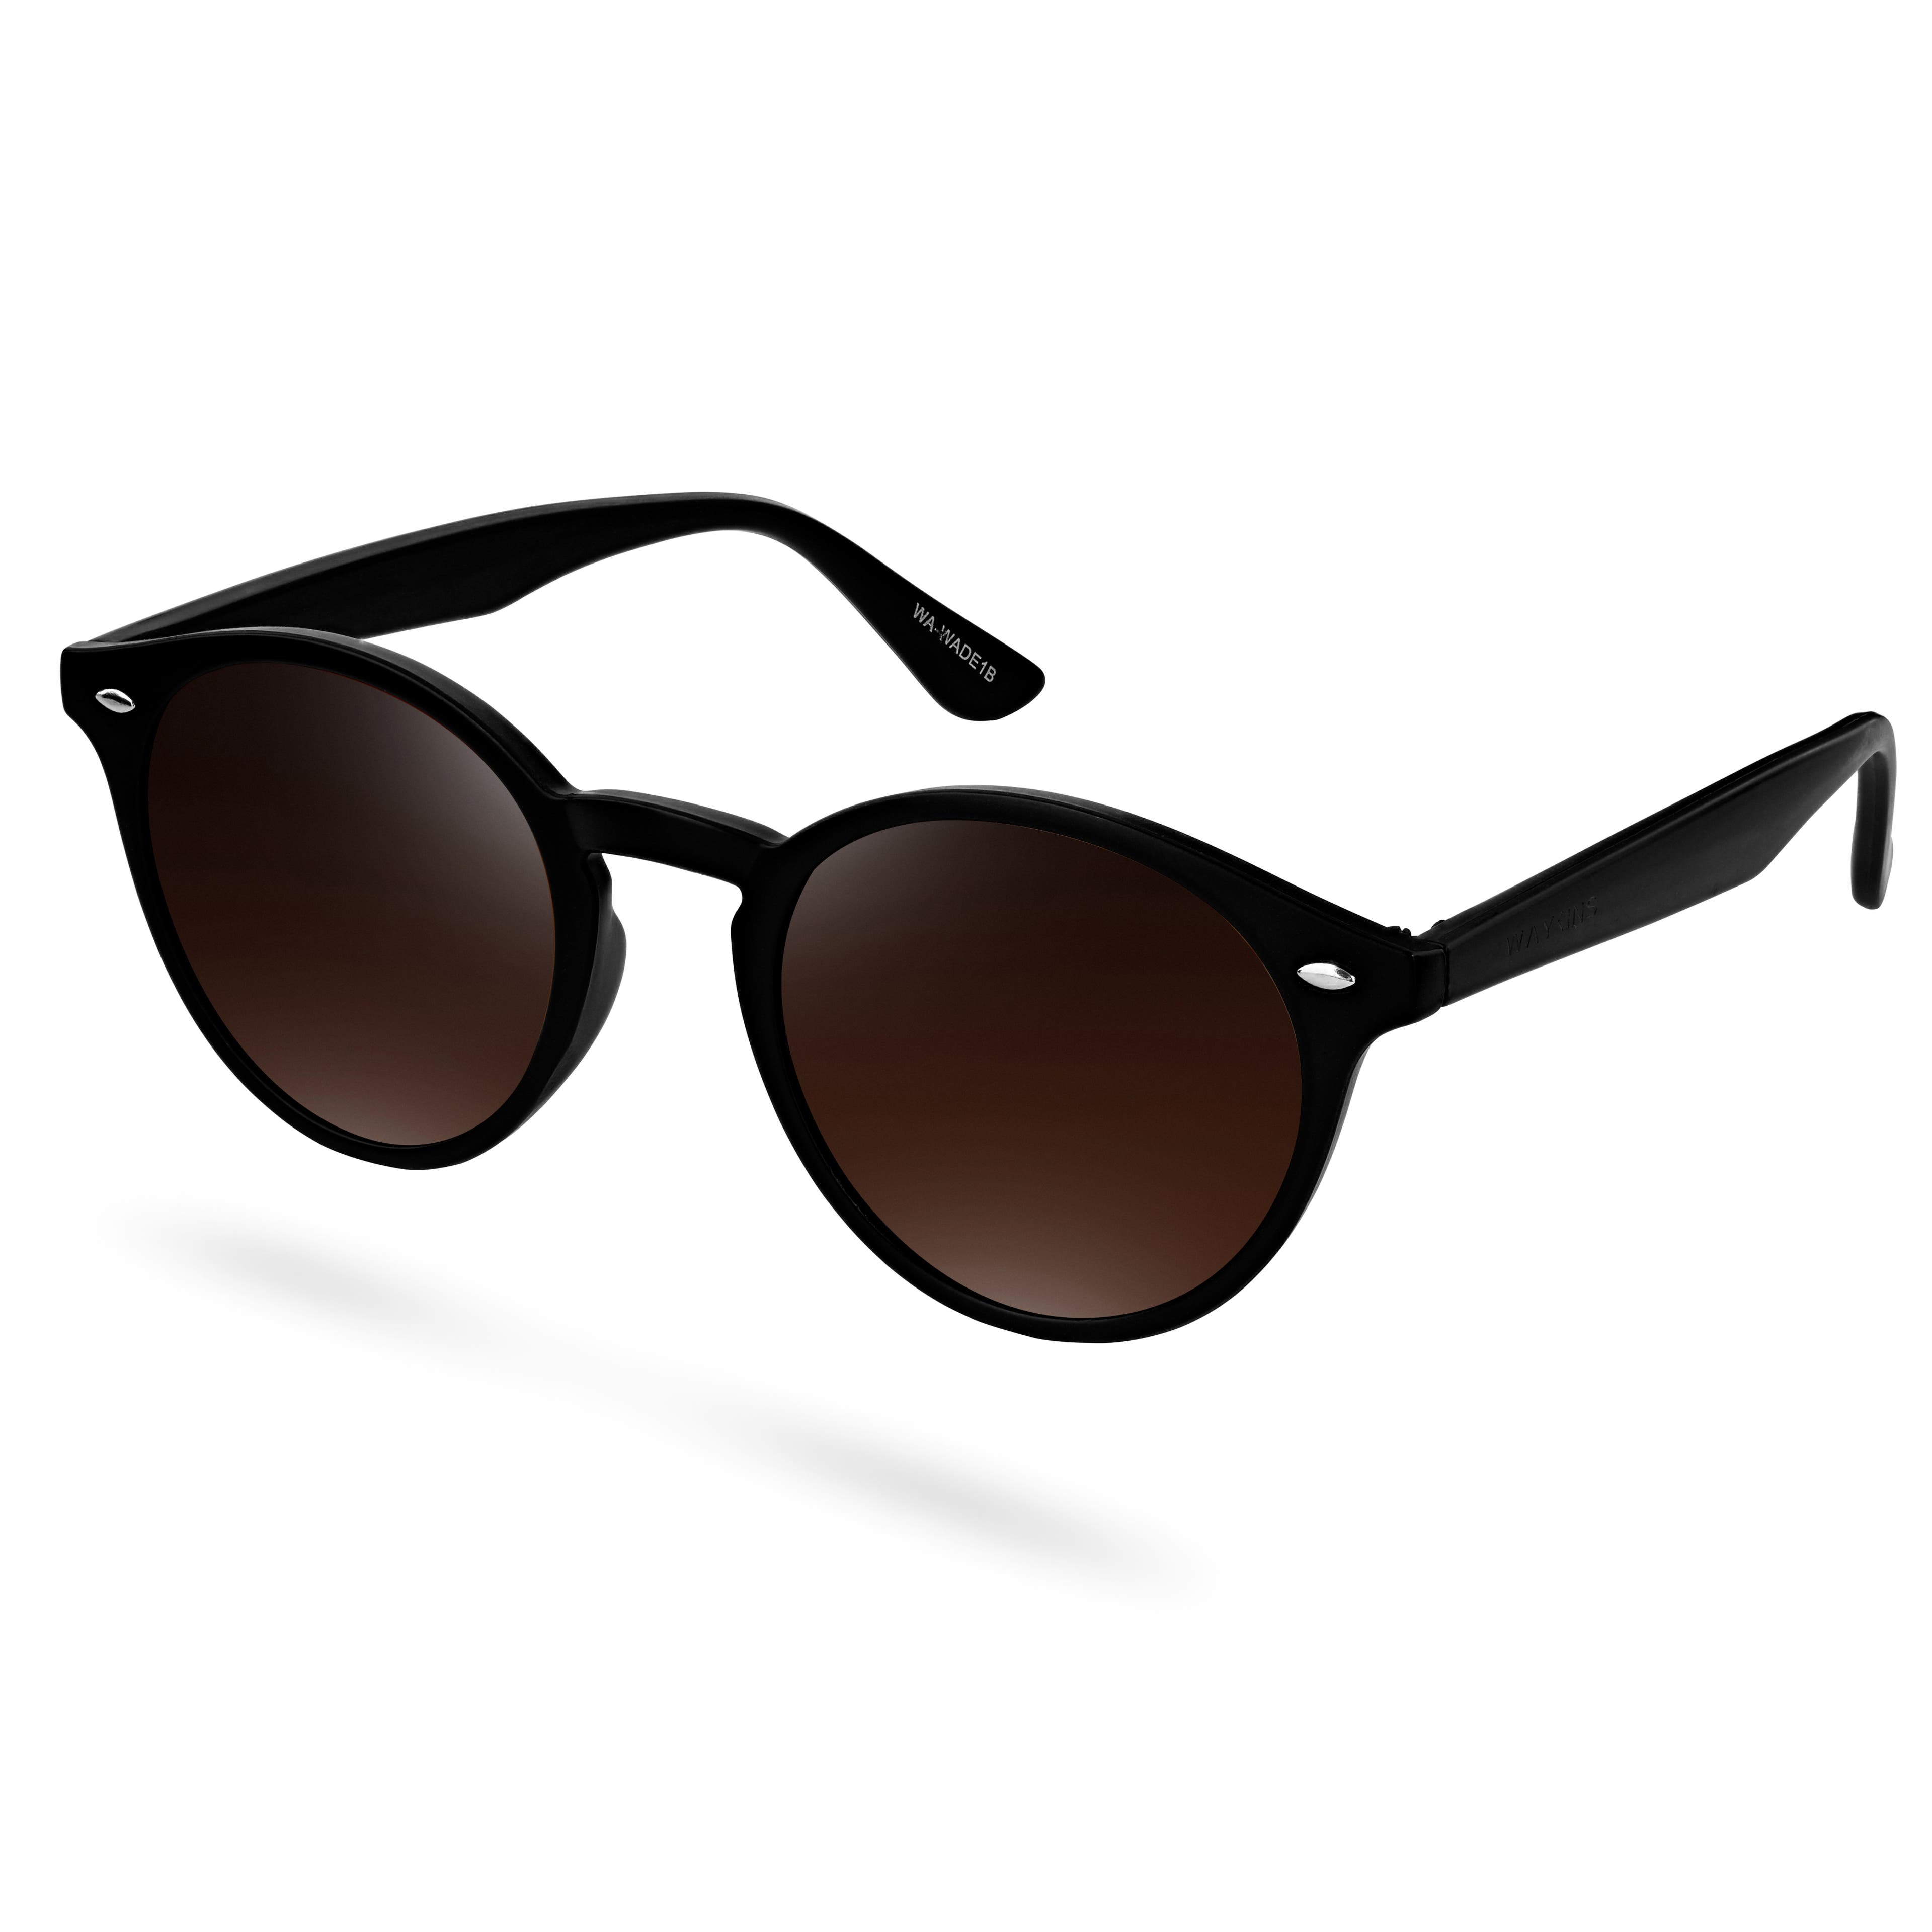 Wally Black & Brown Wade Sunglasses